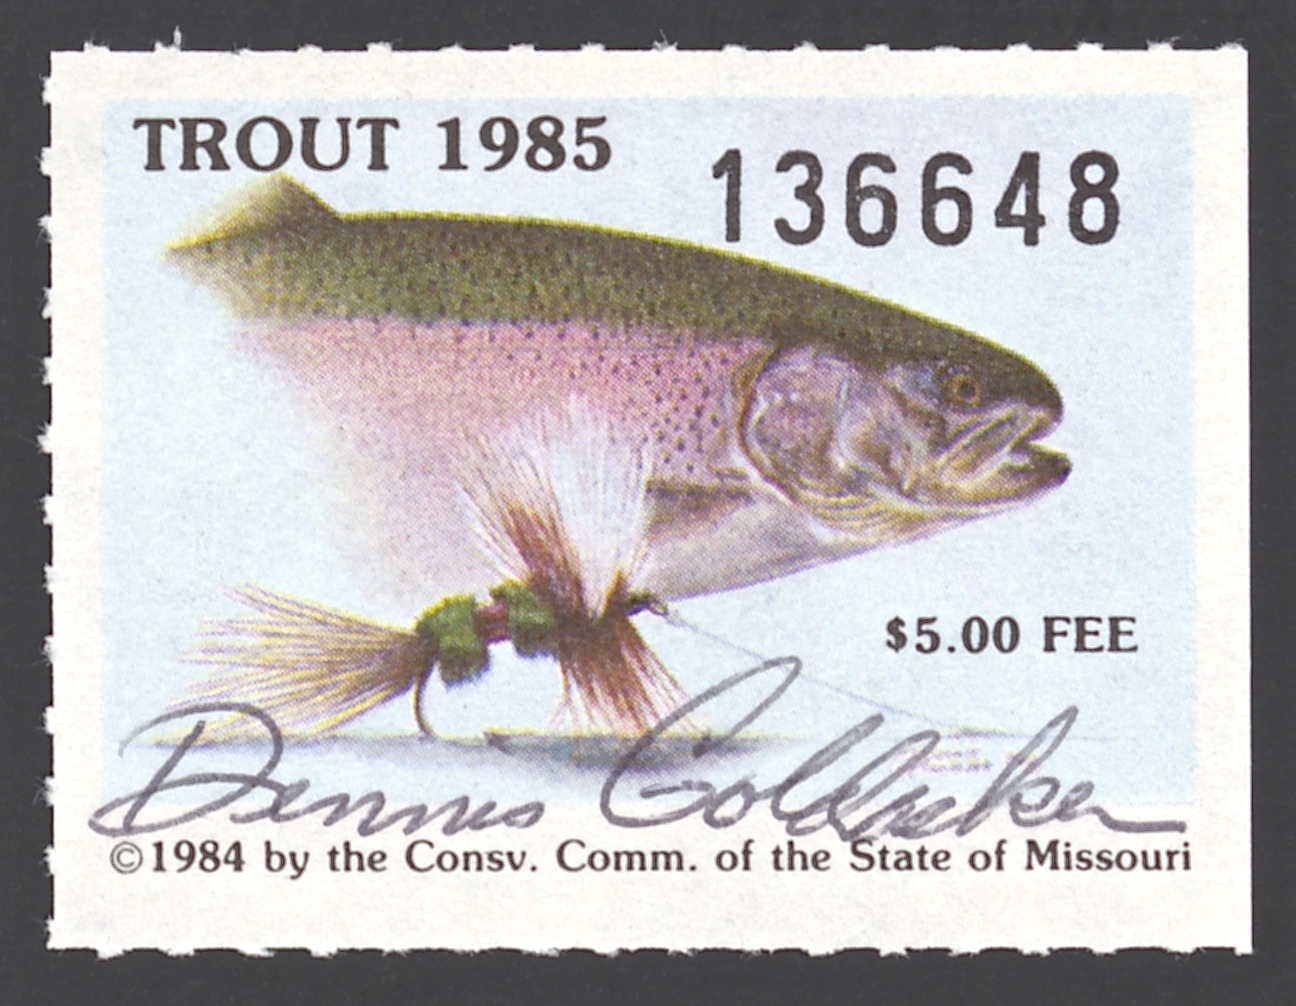 1985 Missouri Missouri Trout Stamp signed by Dennis Goldacker